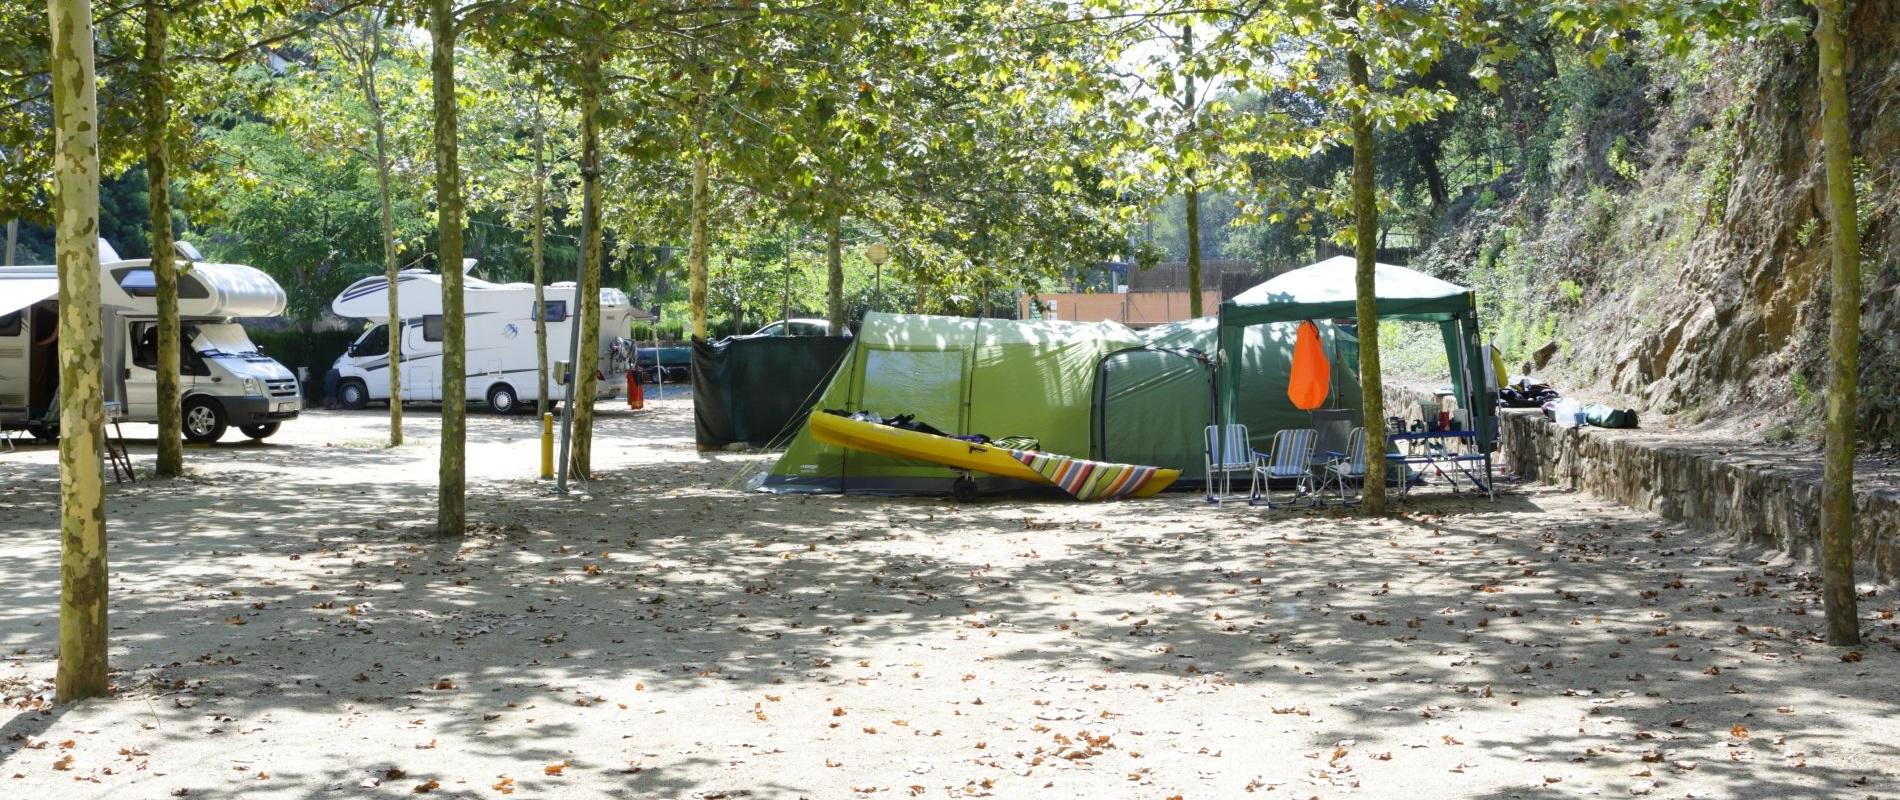 Camping voor campers en grote caravans